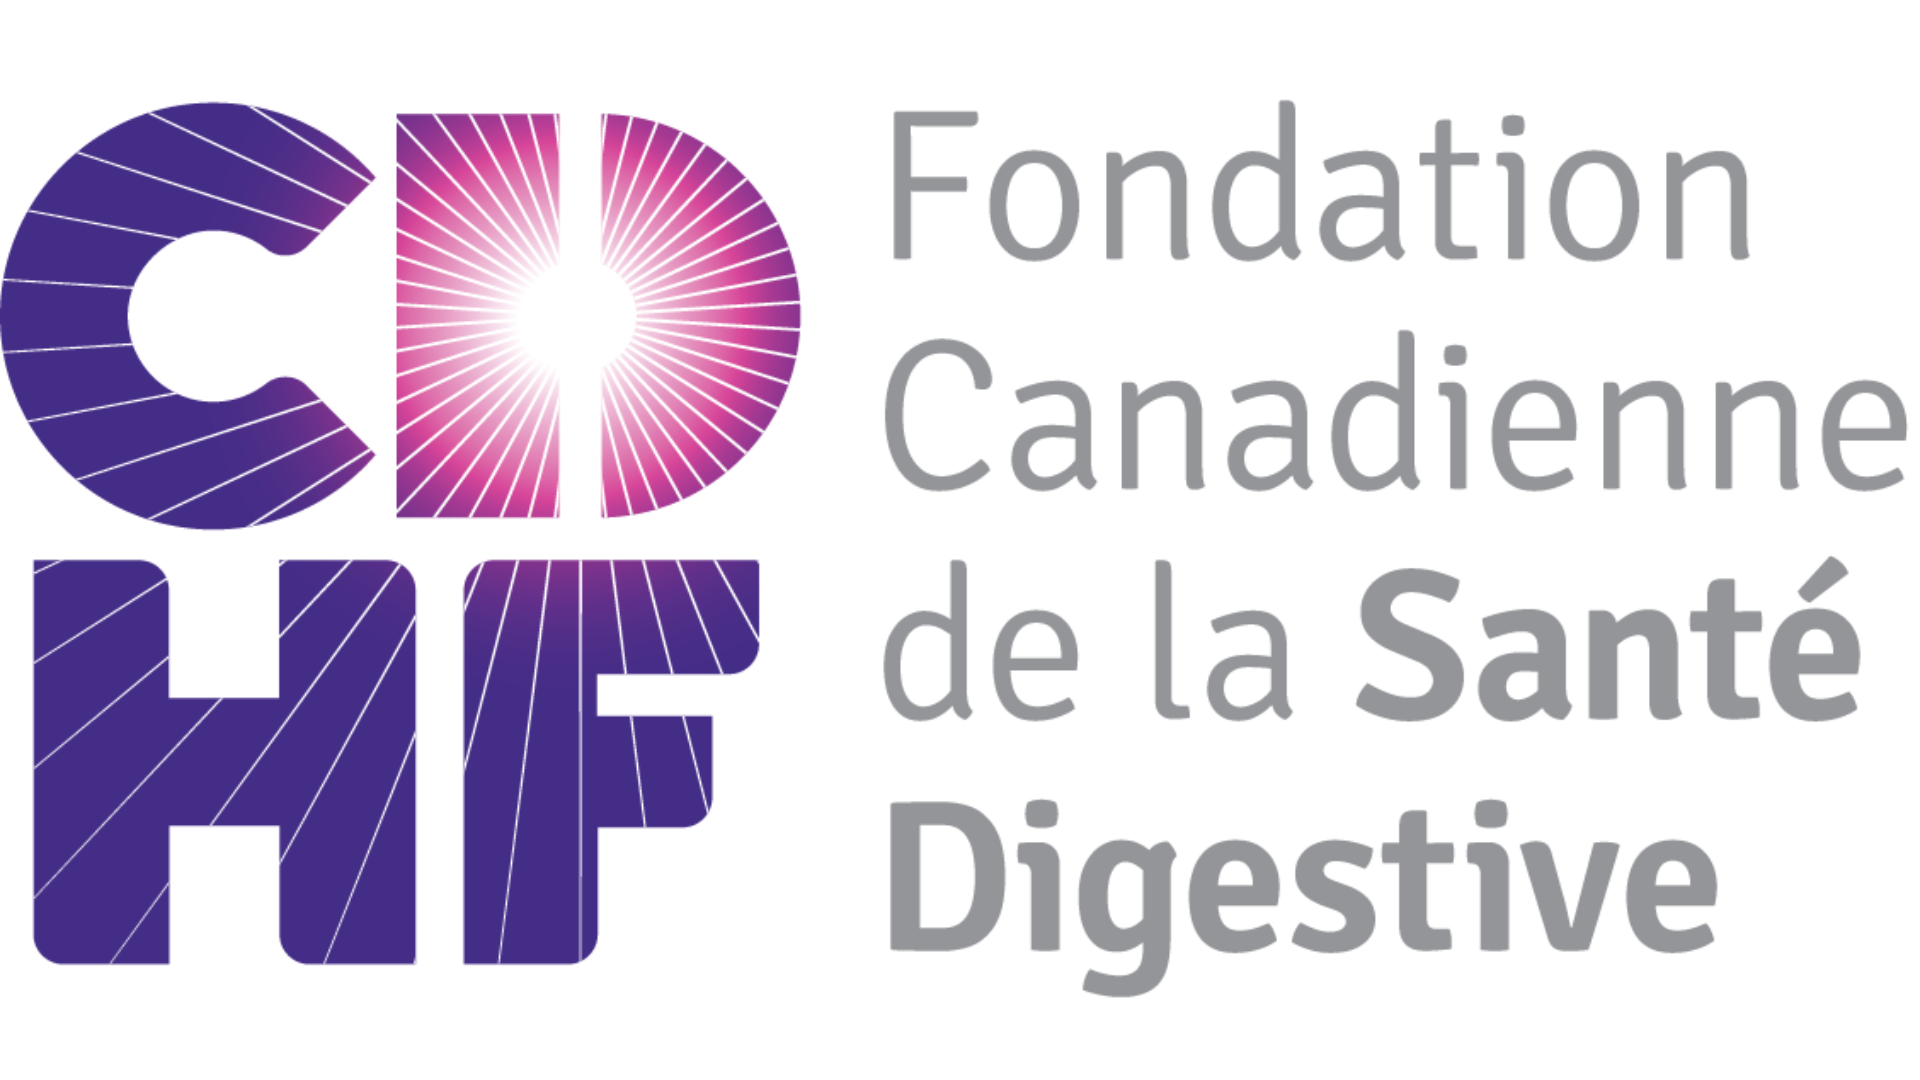 Fondation canadienne santé digestive